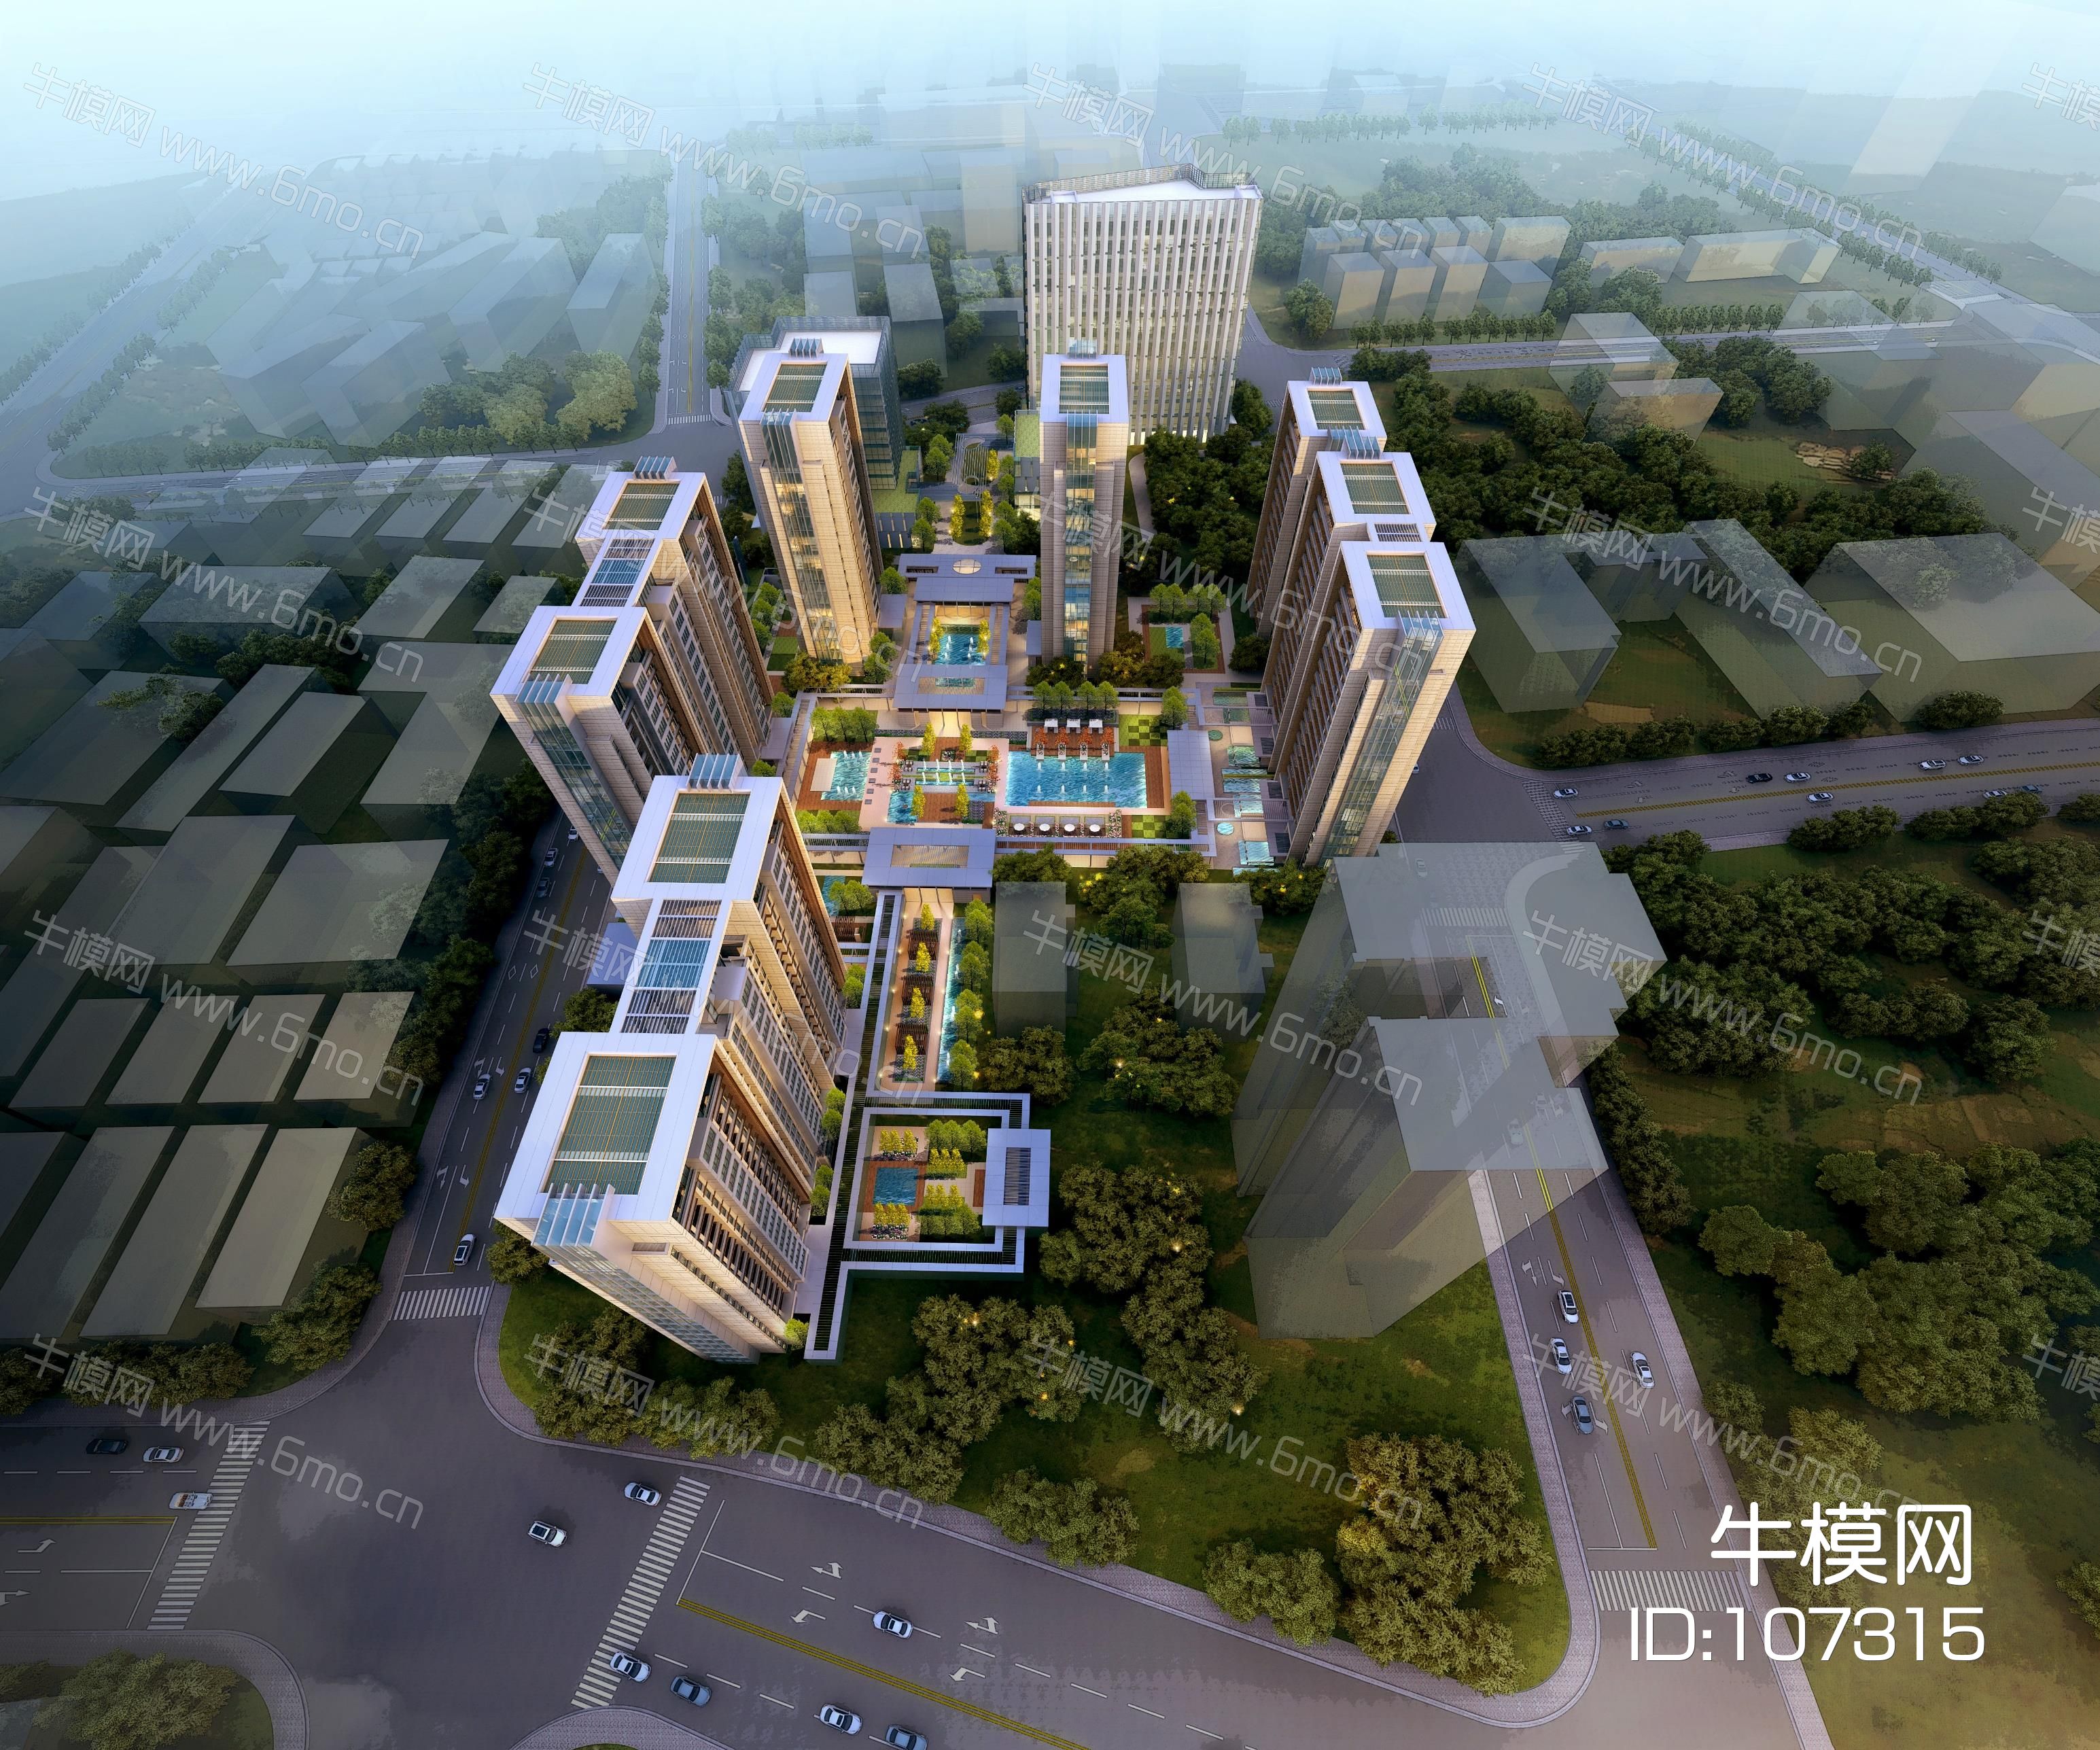 首创杨浦投标新亚洲风格高层+入口示范区中庭景观天华